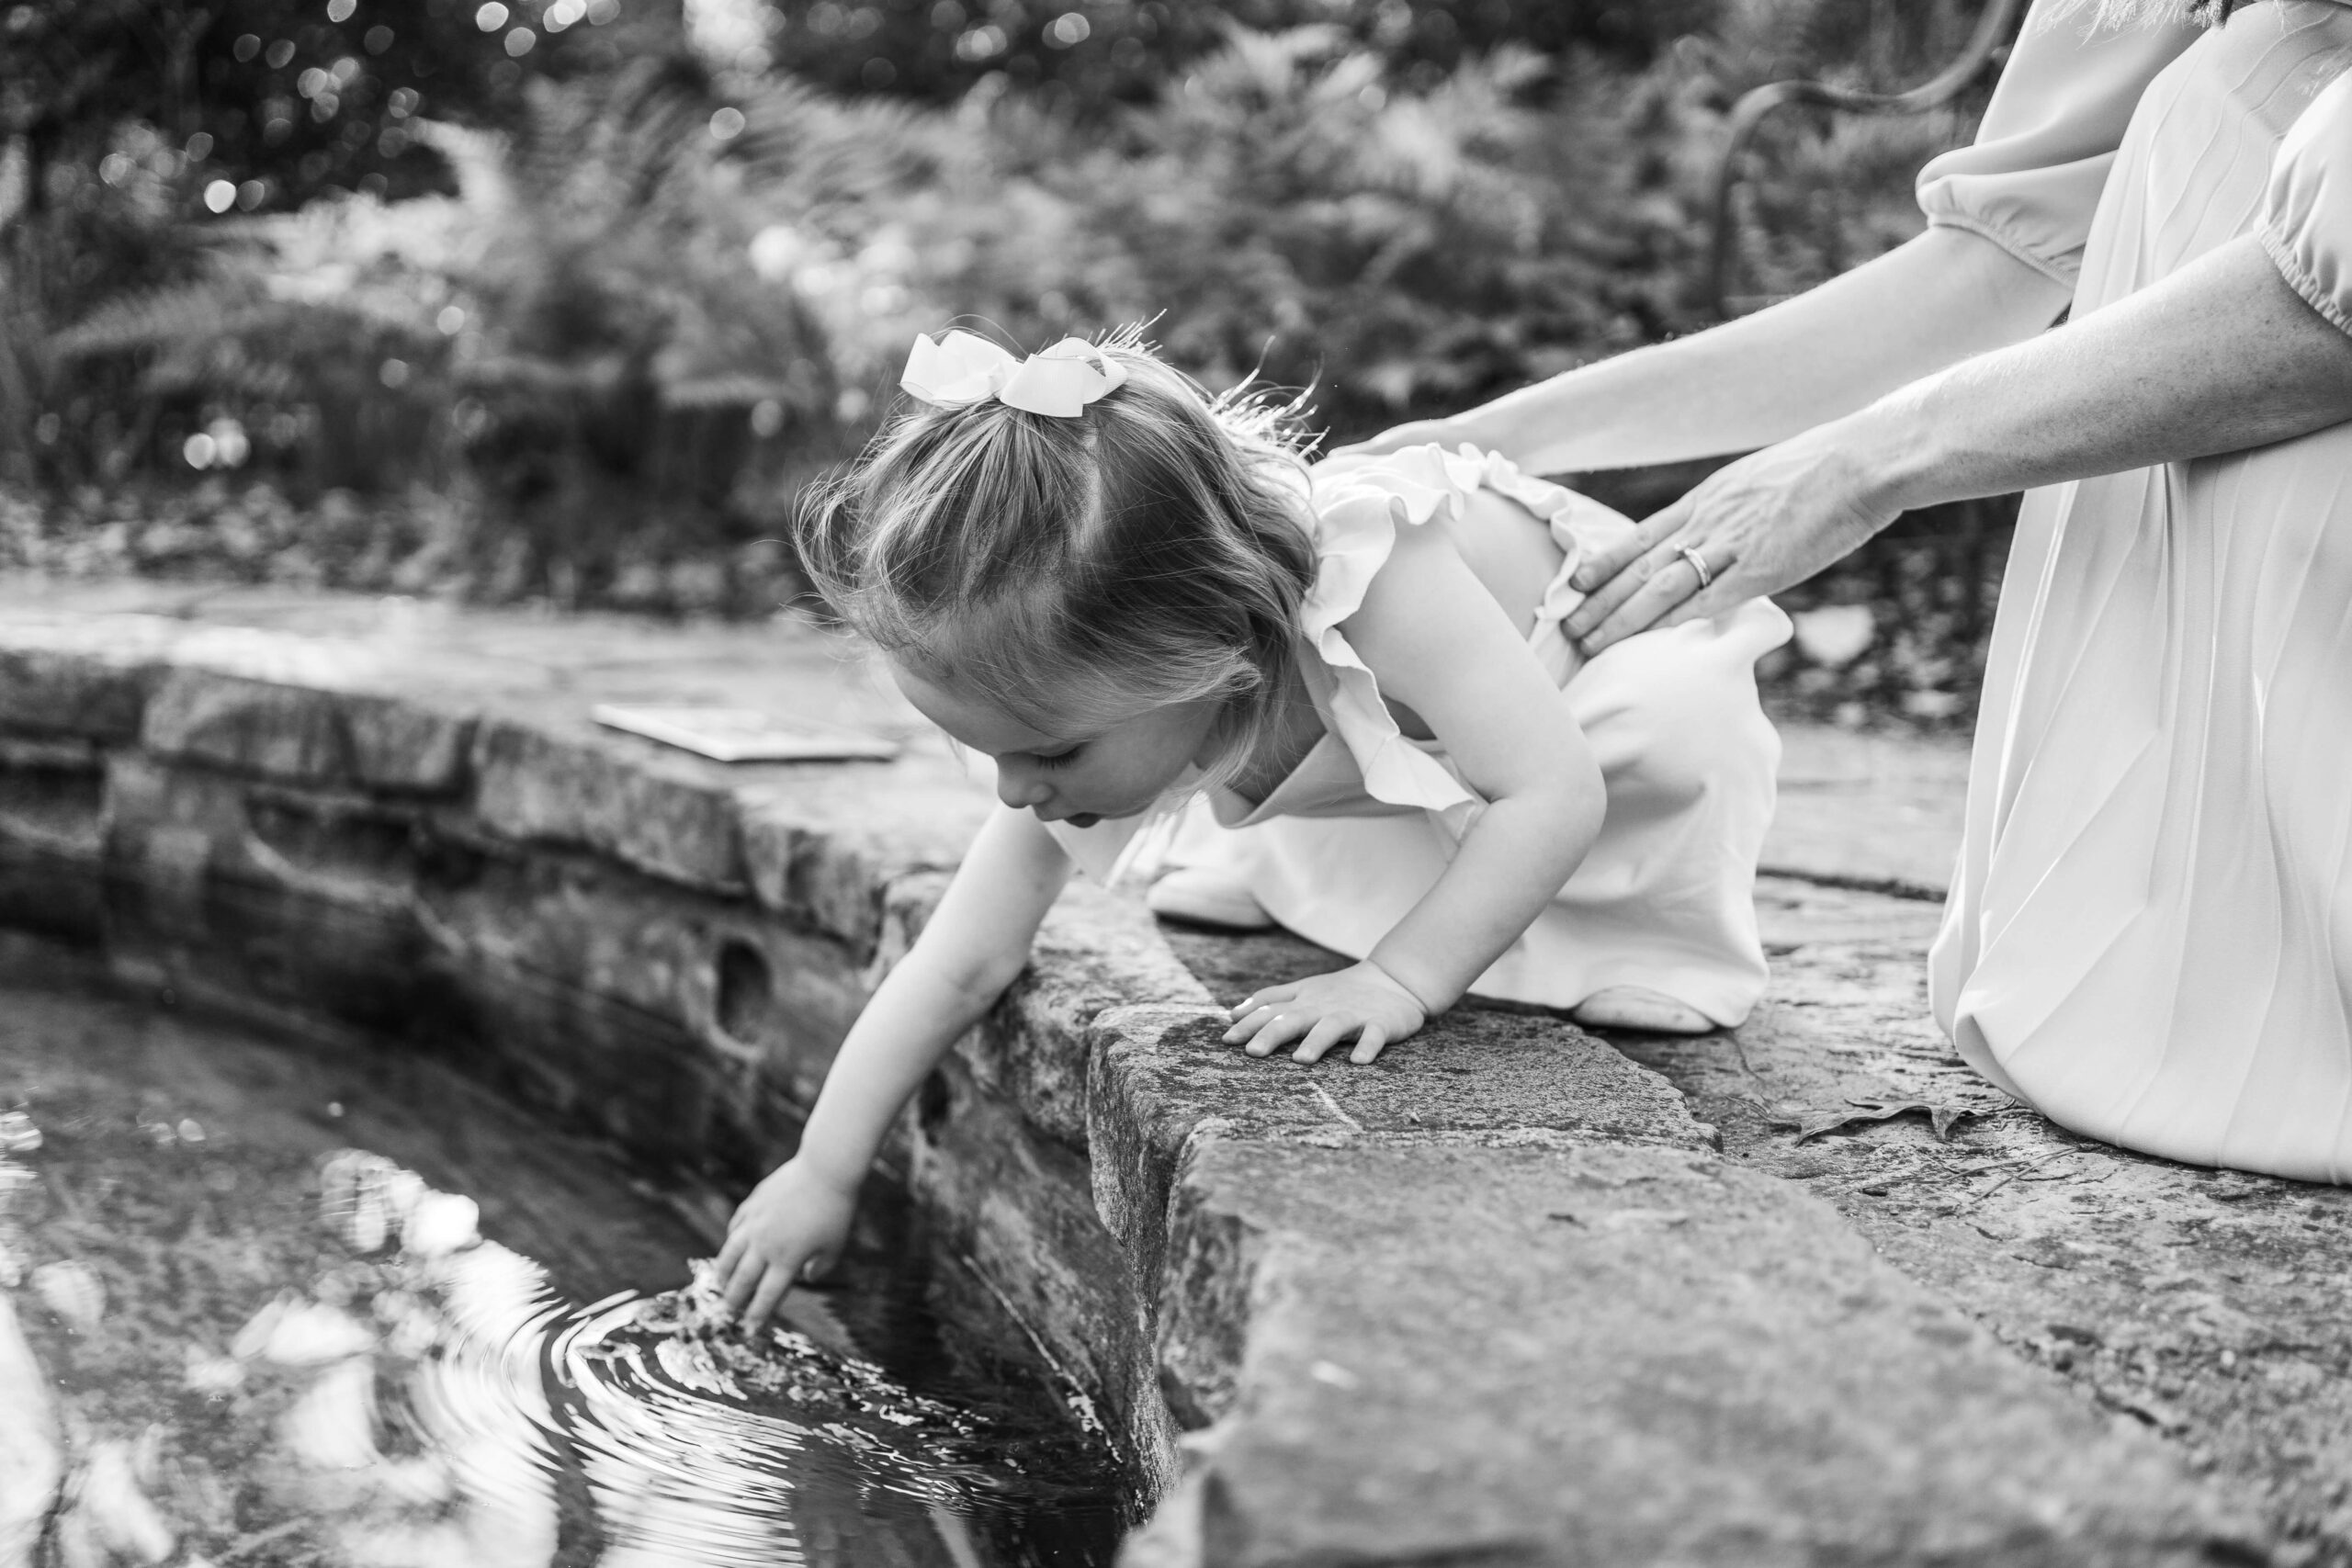 Girl brushing water at Birmingham Botanical Gardens on things to in Birmingham with kids.